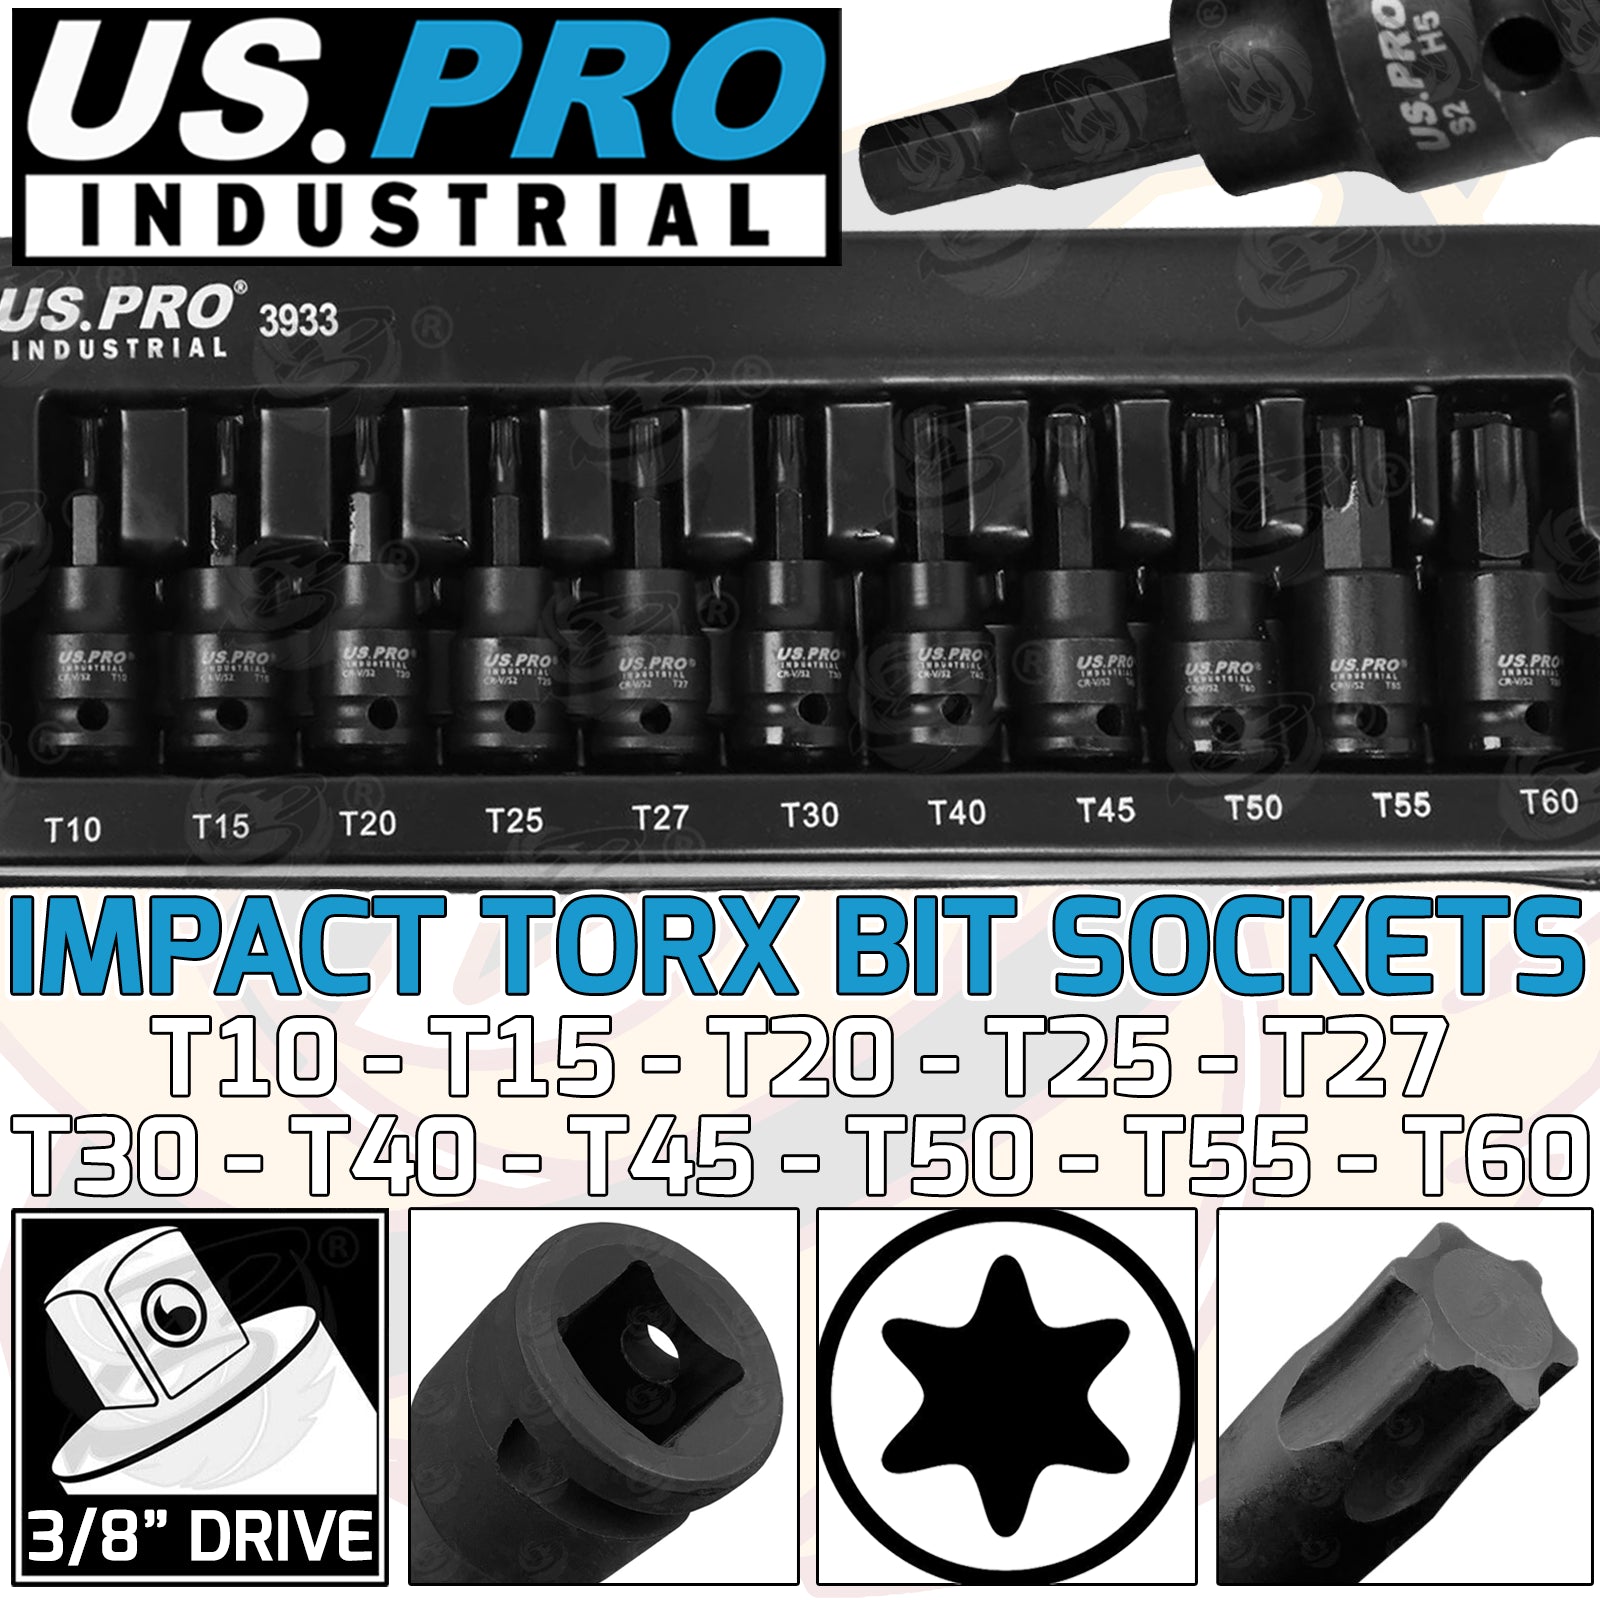 US PRO INDUSTRIAL 11PCS 3/8" DRIVE IMPACT TORX BIT SOCKETS T10 - T60